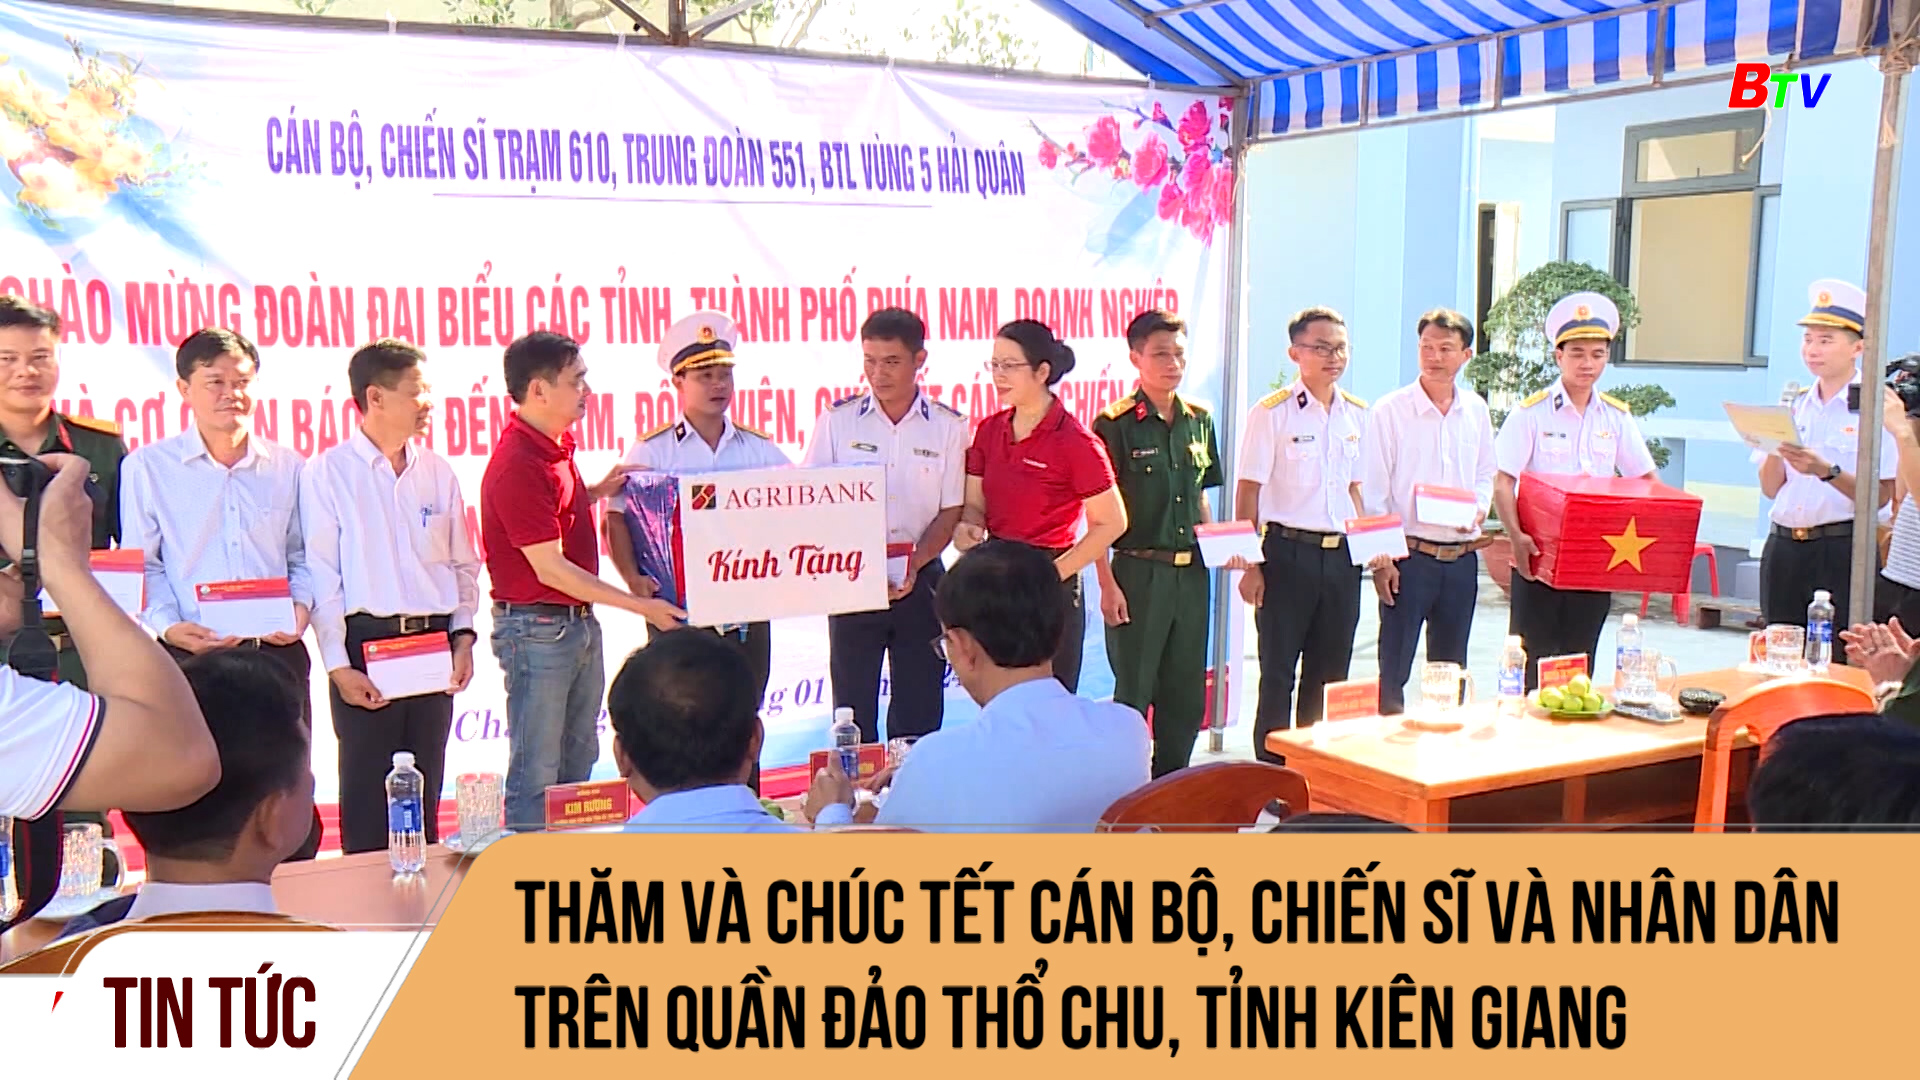 Thăm và chúc tết cán bộ, chiến sĩ và nhân dân trên quần đảo Thổ Chu, tỉnh Kiên Giang